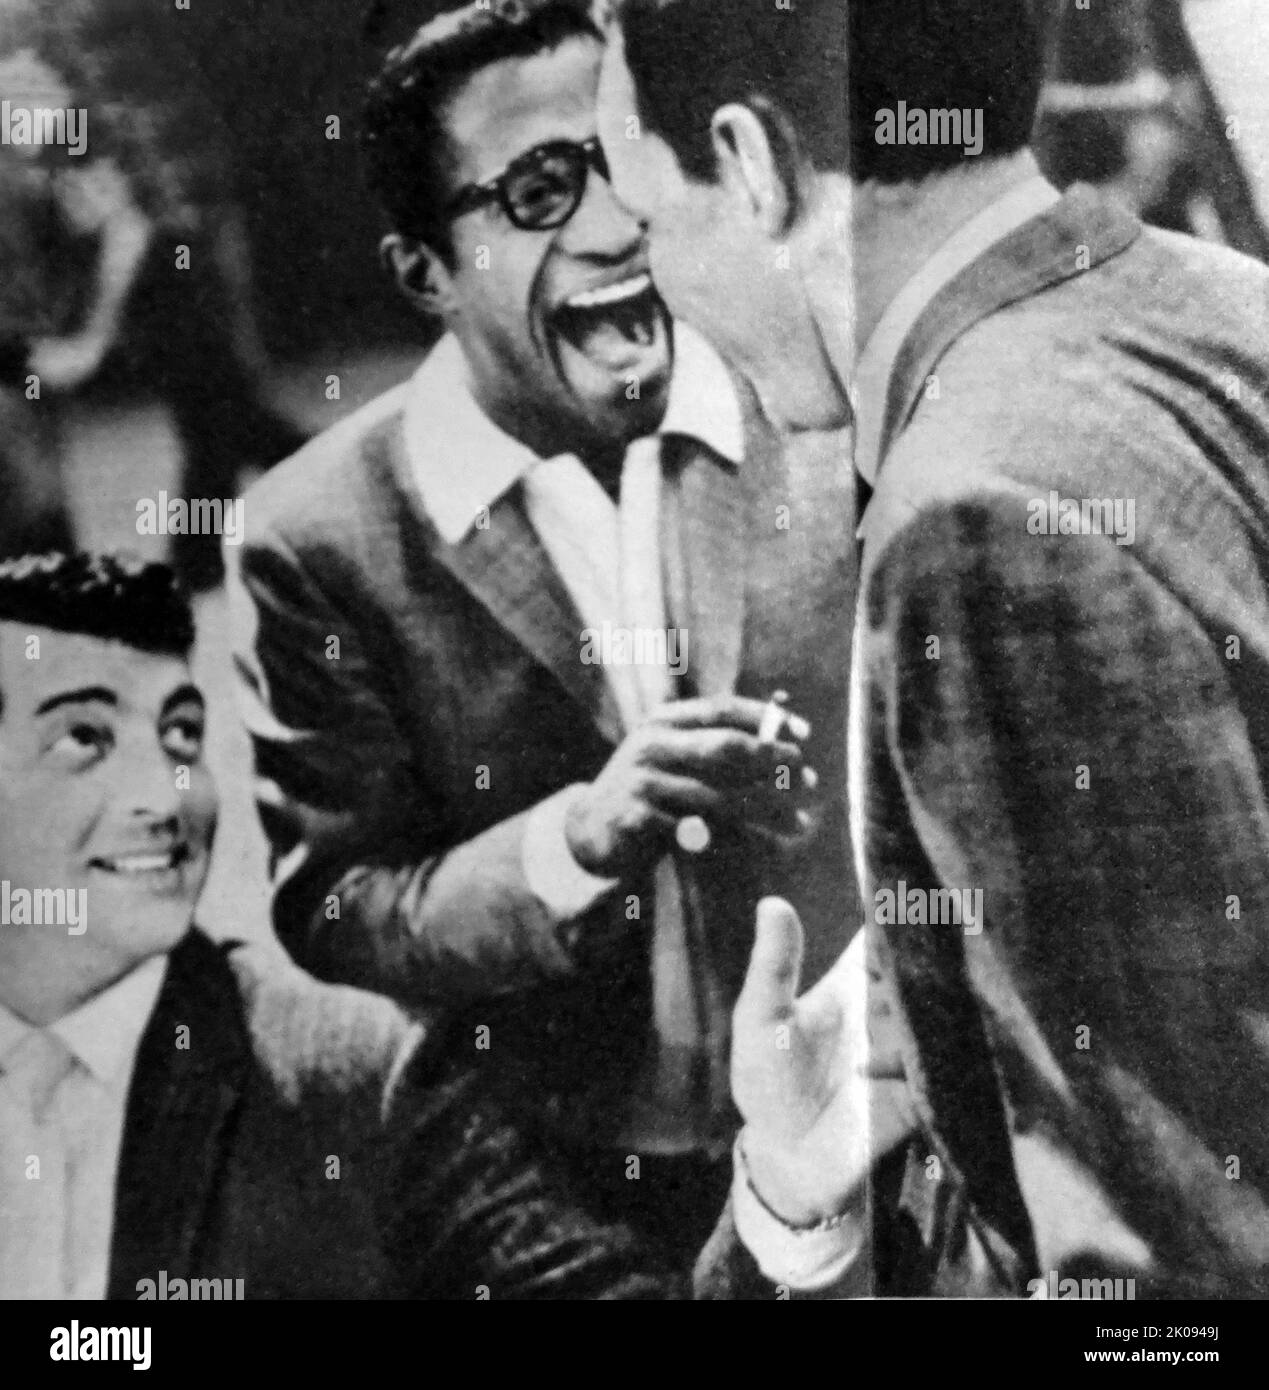 Photographie de journal de Dean Martin et Sammy Davis Jnr. Dean Martin (7 juin 1917 - 25 décembre 1995) était un chanteur, acteur et comédien américain. Samuel George Davis Jr. (8 décembre 1925 - 16 mai 1990) était un chanteur, danseur, acteur, vaudevillian, et comédien américain. Banque D'Images